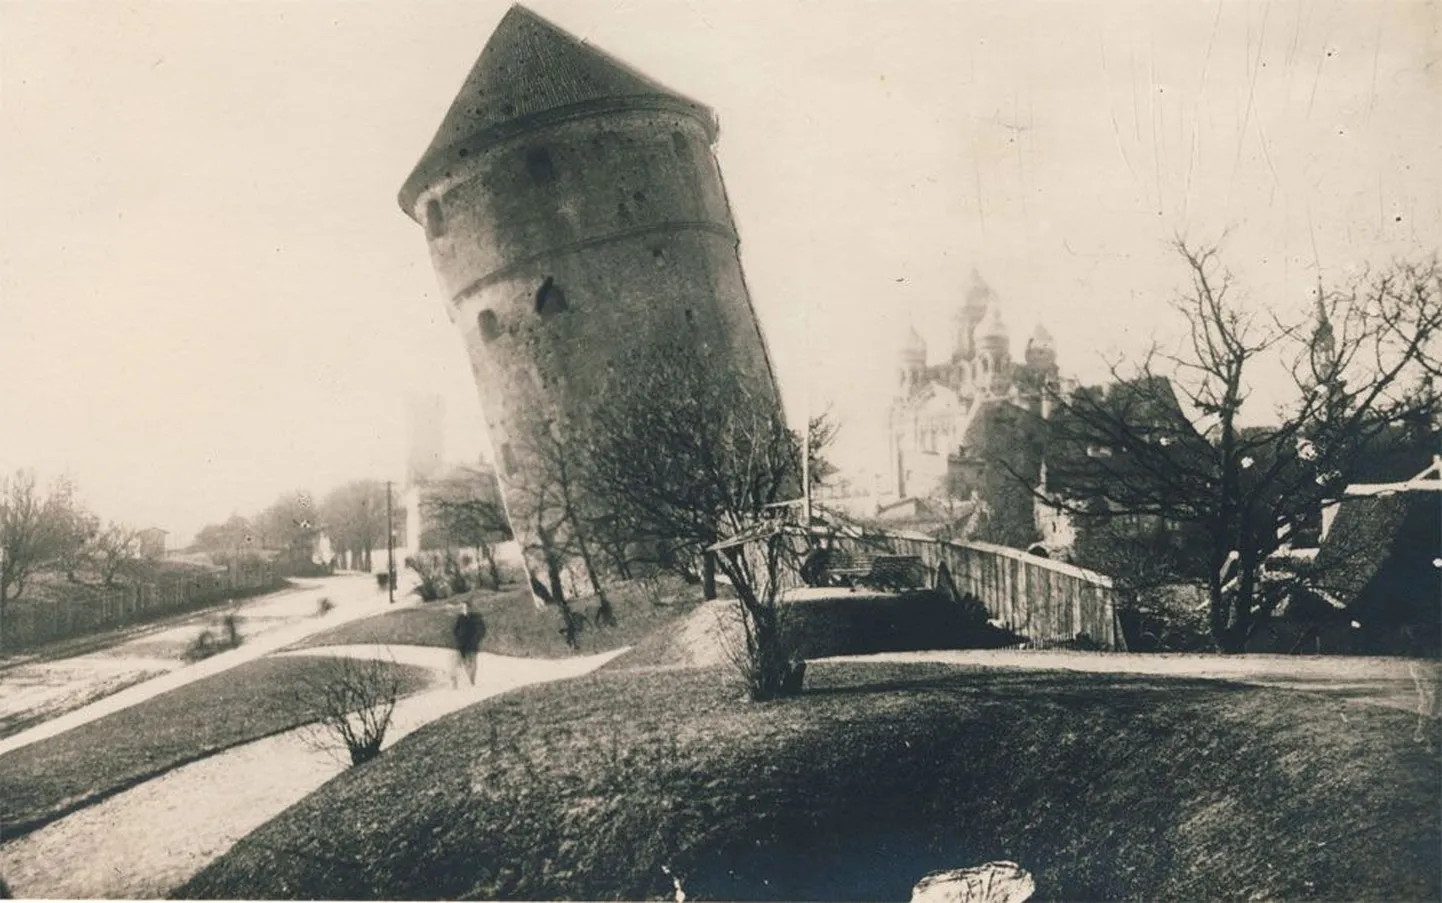 H. ja J. Kristini aprillikaart aastast 1910, kus Kiek in de Köki on kujutatud Pisa torni moodi viltuvajununa.